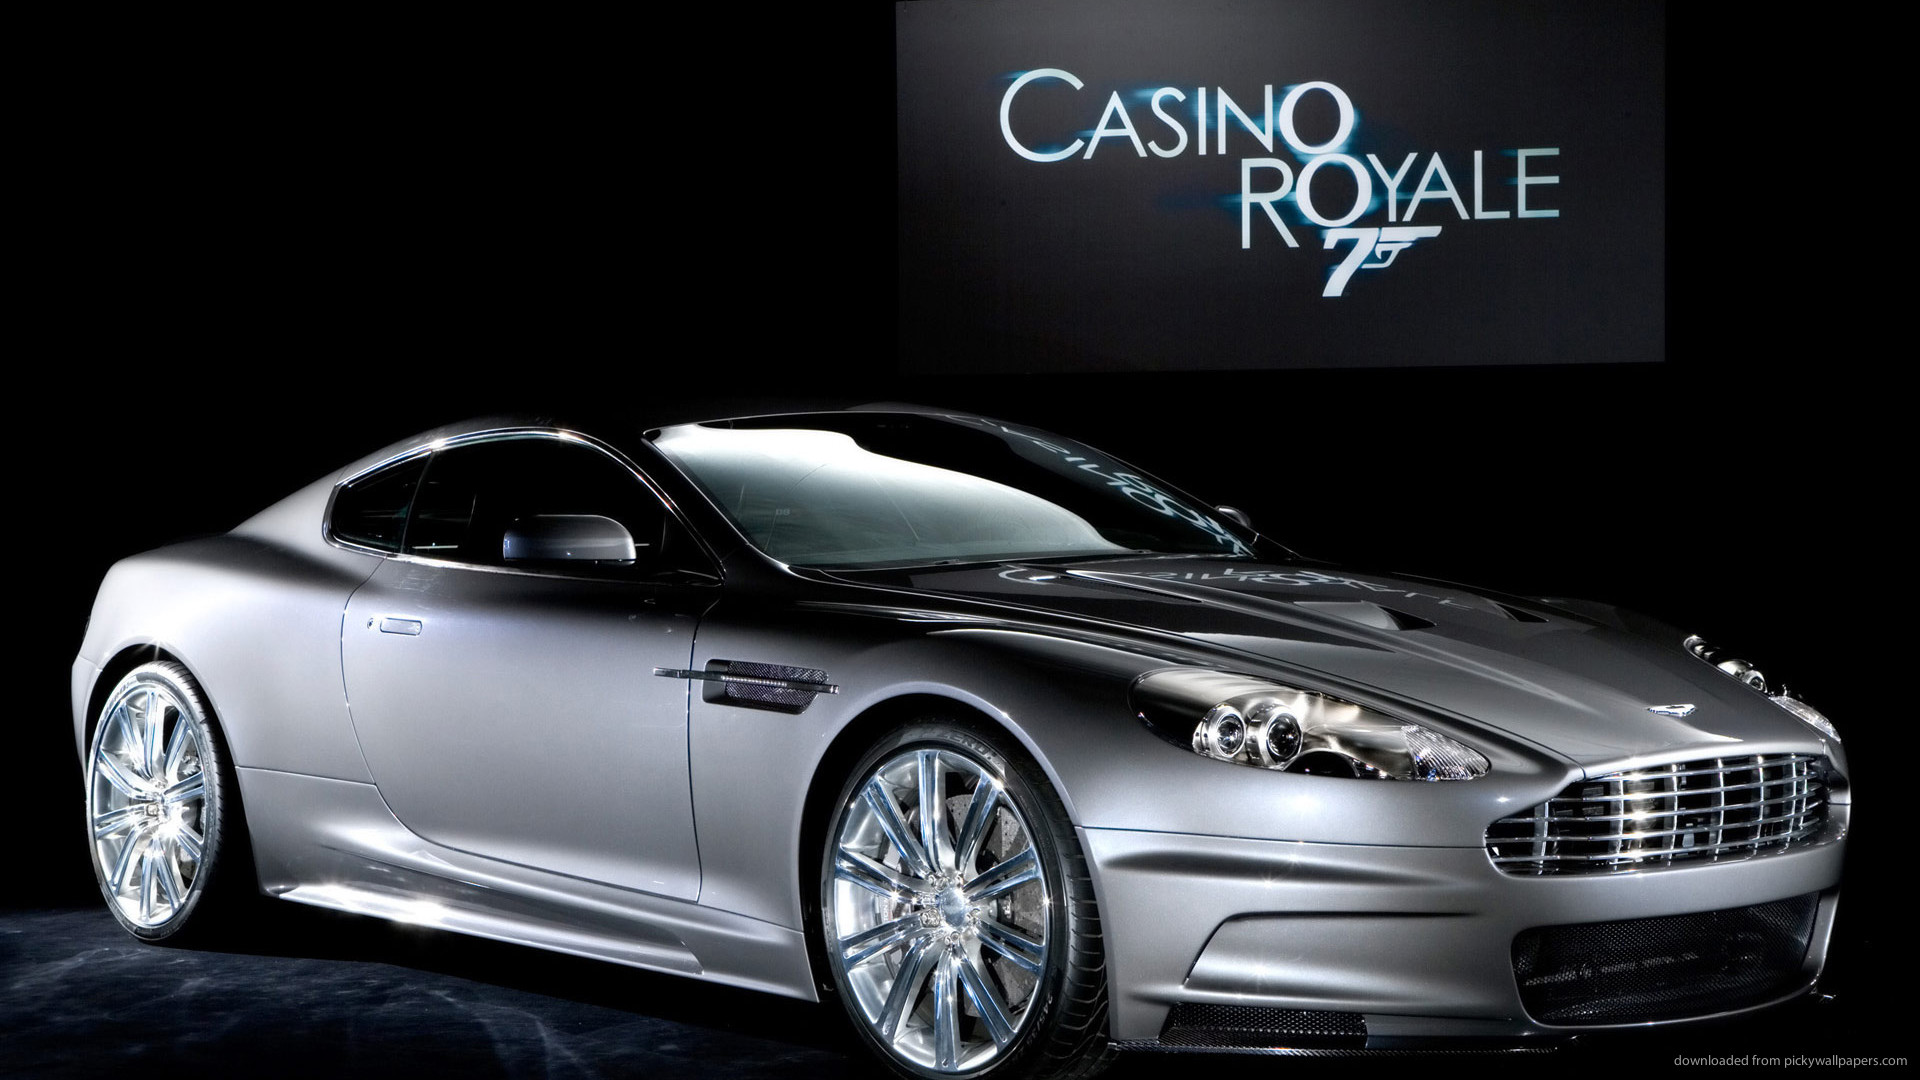 fond d'écran du casino royal,véhicule terrestre,véhicule,voiture,voiture de sport,aston martin dbs v12